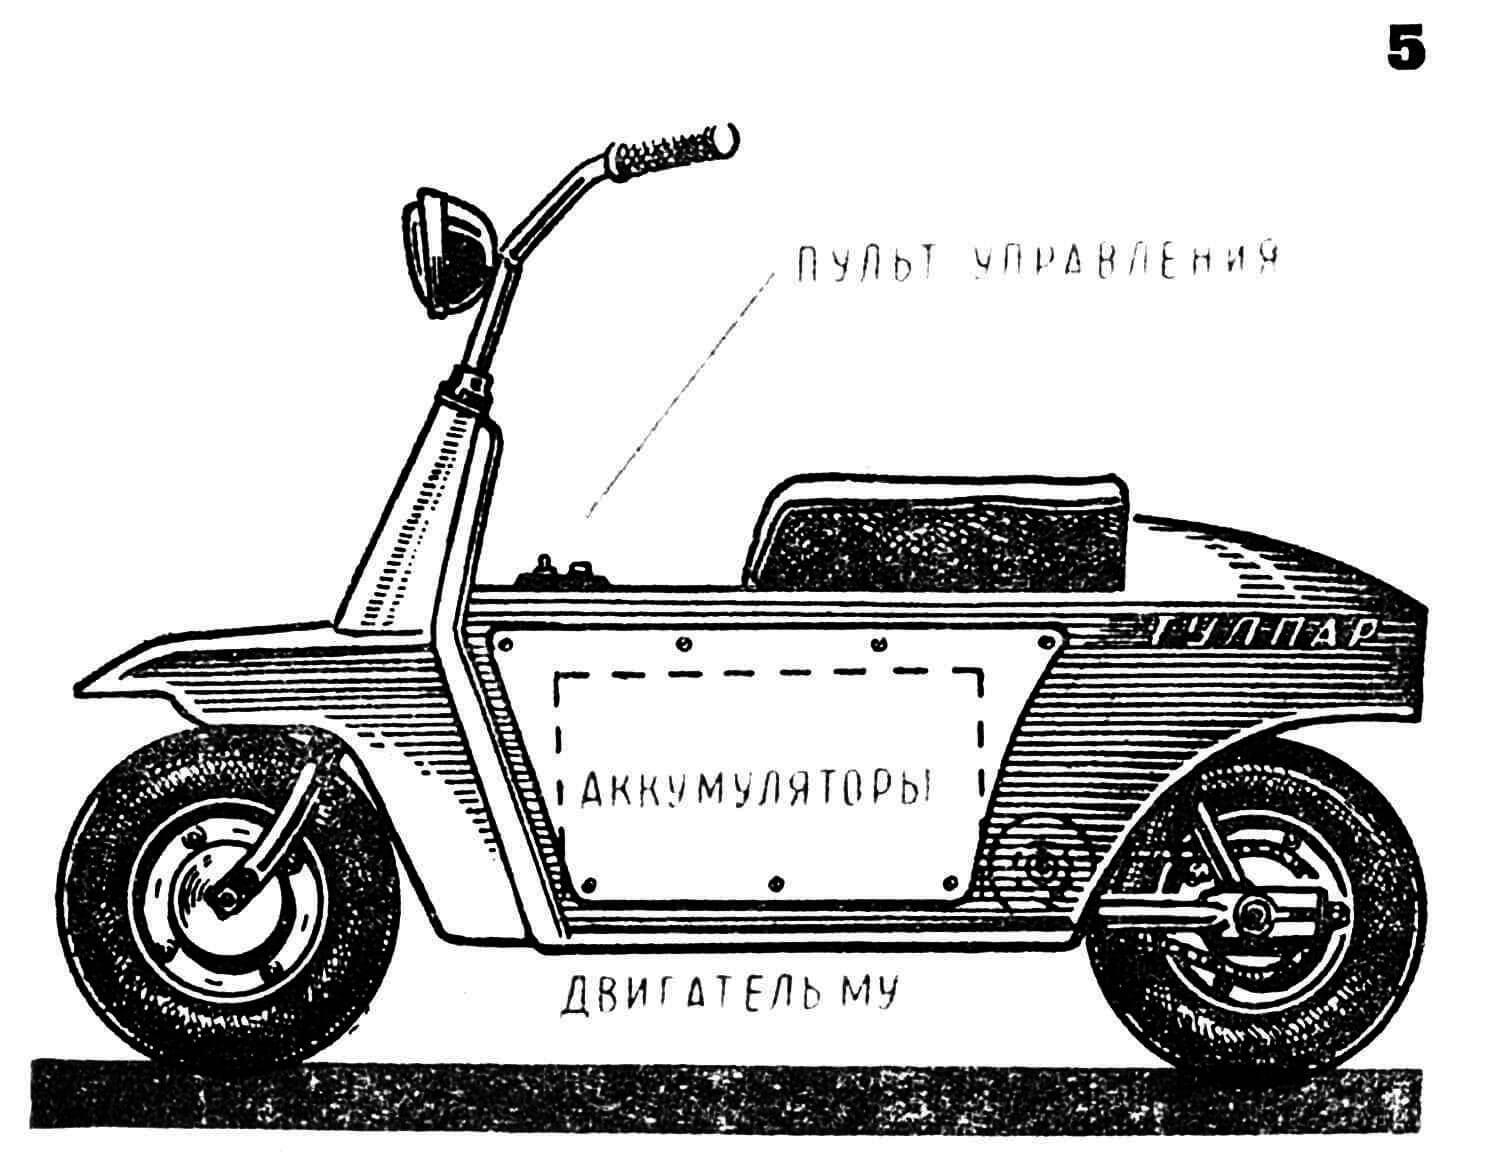 Микромотороллер «Тулпар» с электромотором (СССР), построенный на ЦСЮТ Казахской ССР. Источник тока — аккумуляторная батарея на 24 в, расположенная в средней части машины. Двигатель МУ-431 с цепным приводом на заднее колесо. Вес машины с аккумулятором — 60 кг.